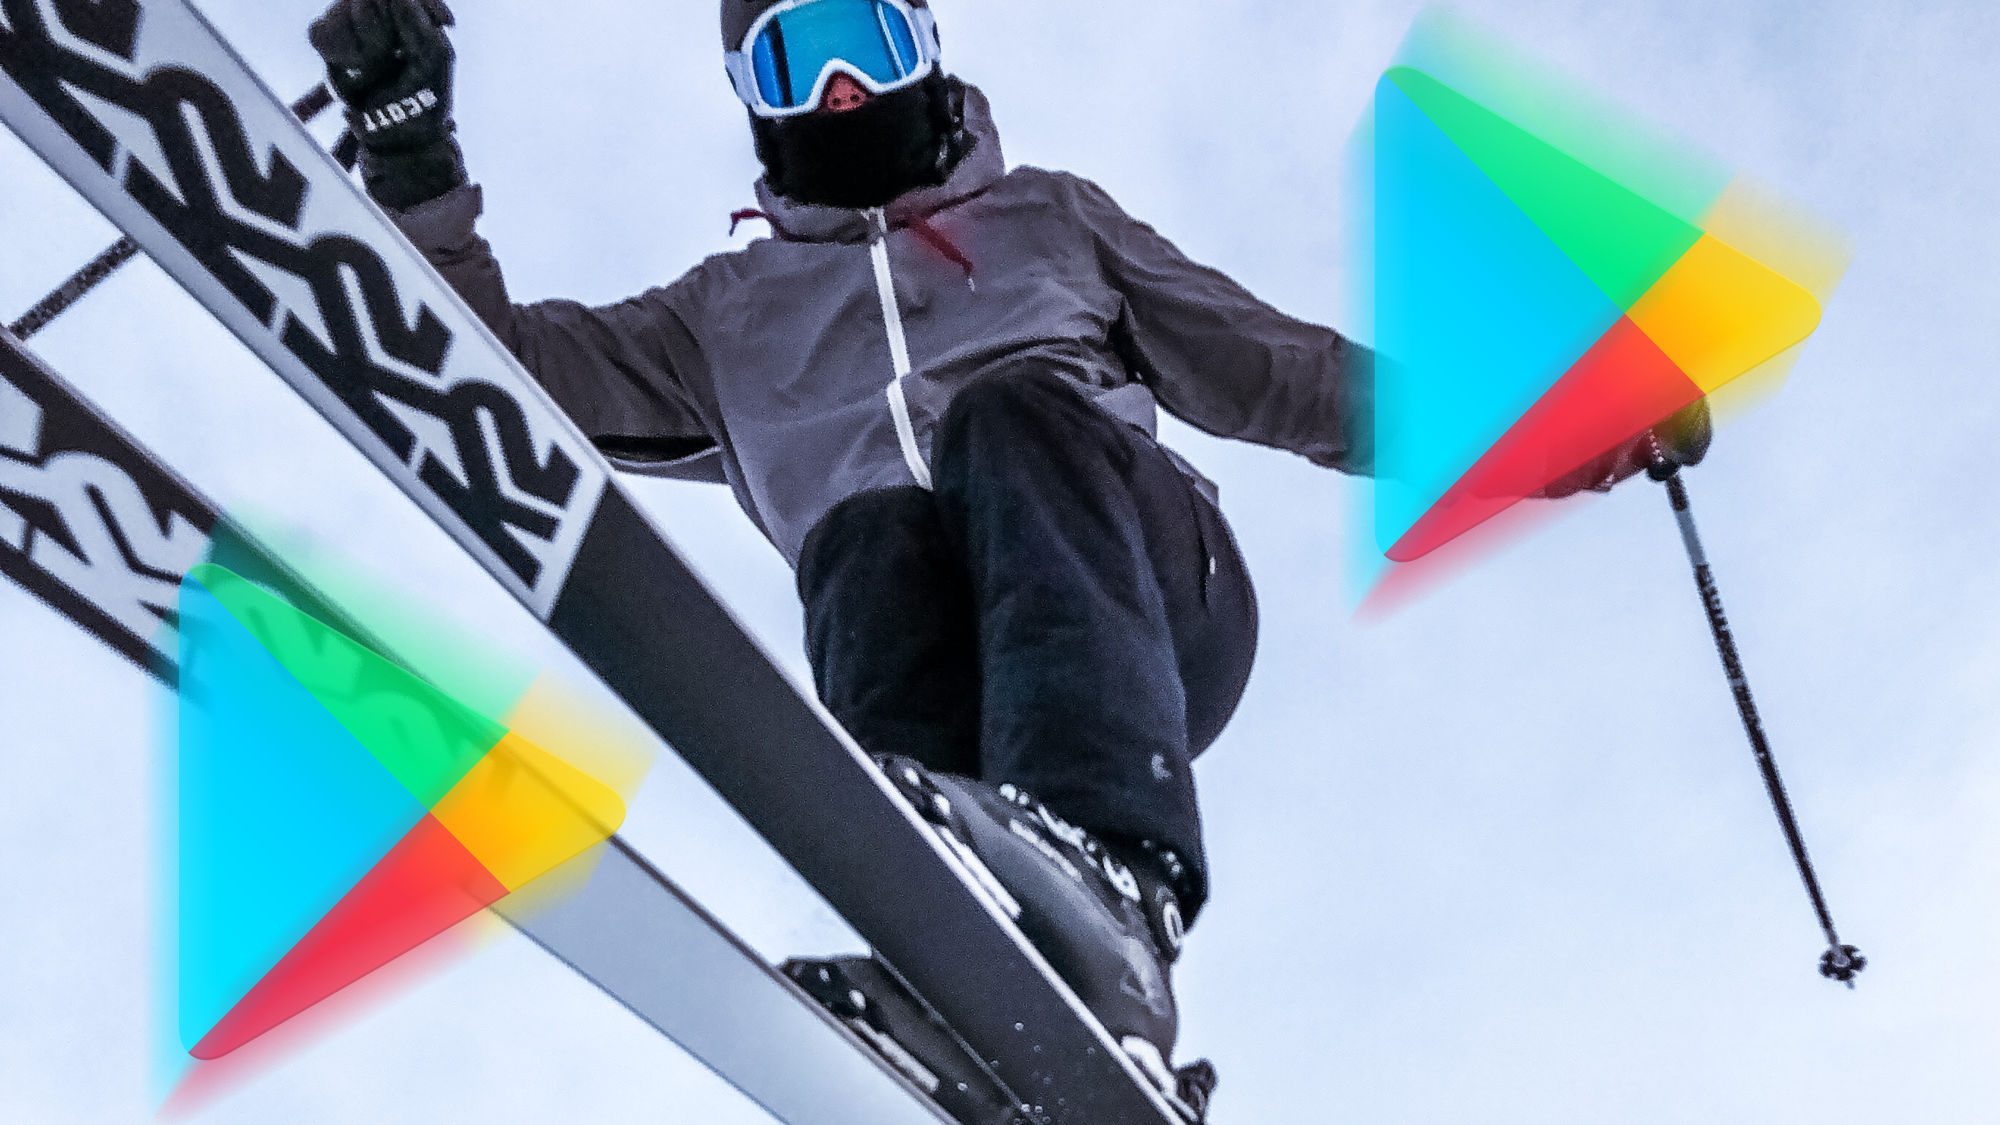 Skoki narciarskie w Deluxe Ski jump 2 w Google Play